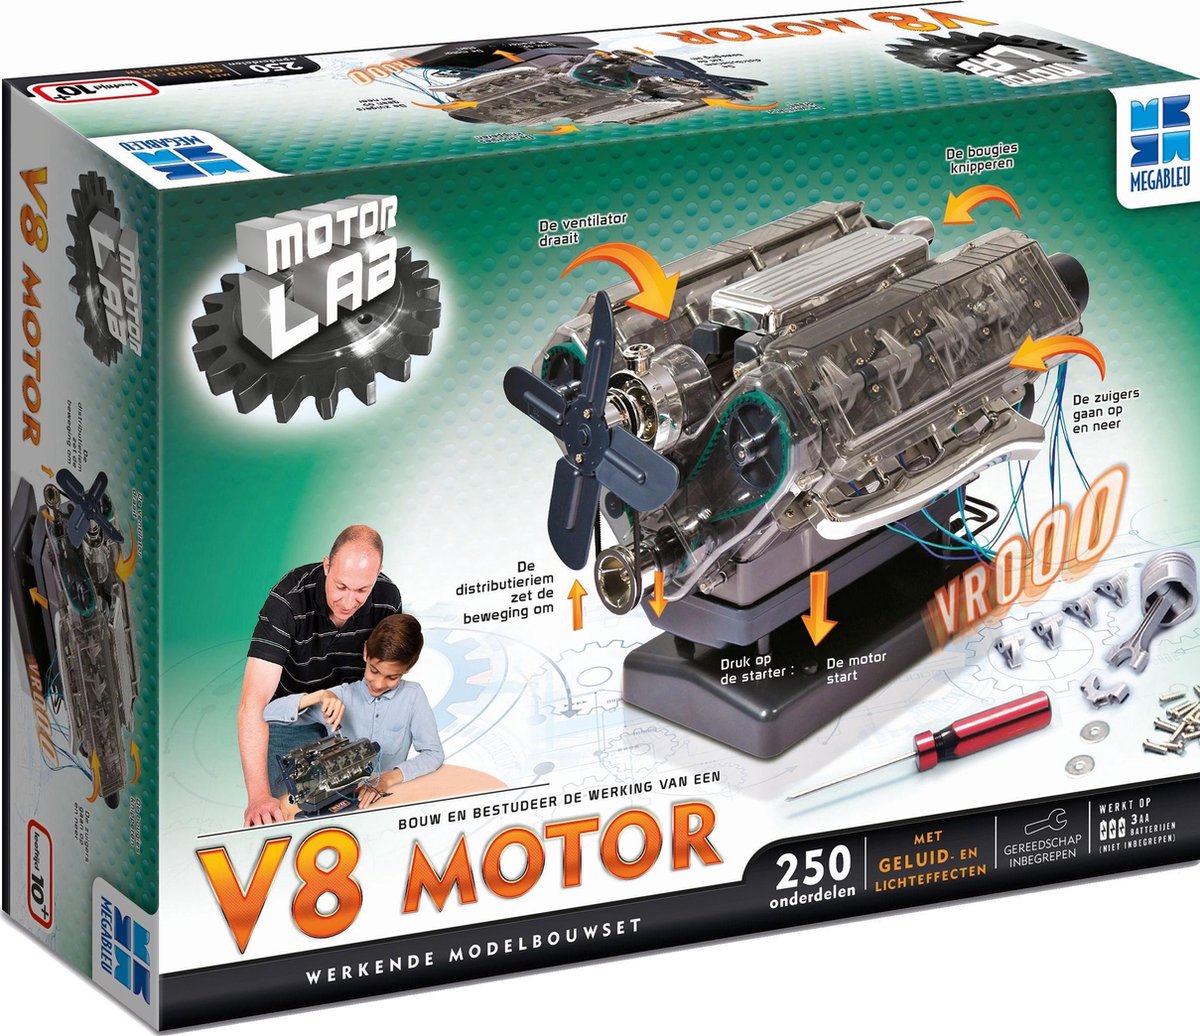 hoop Hassy Groene achtergrond Motor Lab Bouwmodelset: V8 Motor - Modelbouw - Werkende Motor - Miniatuur  bouwpakket | bol.com